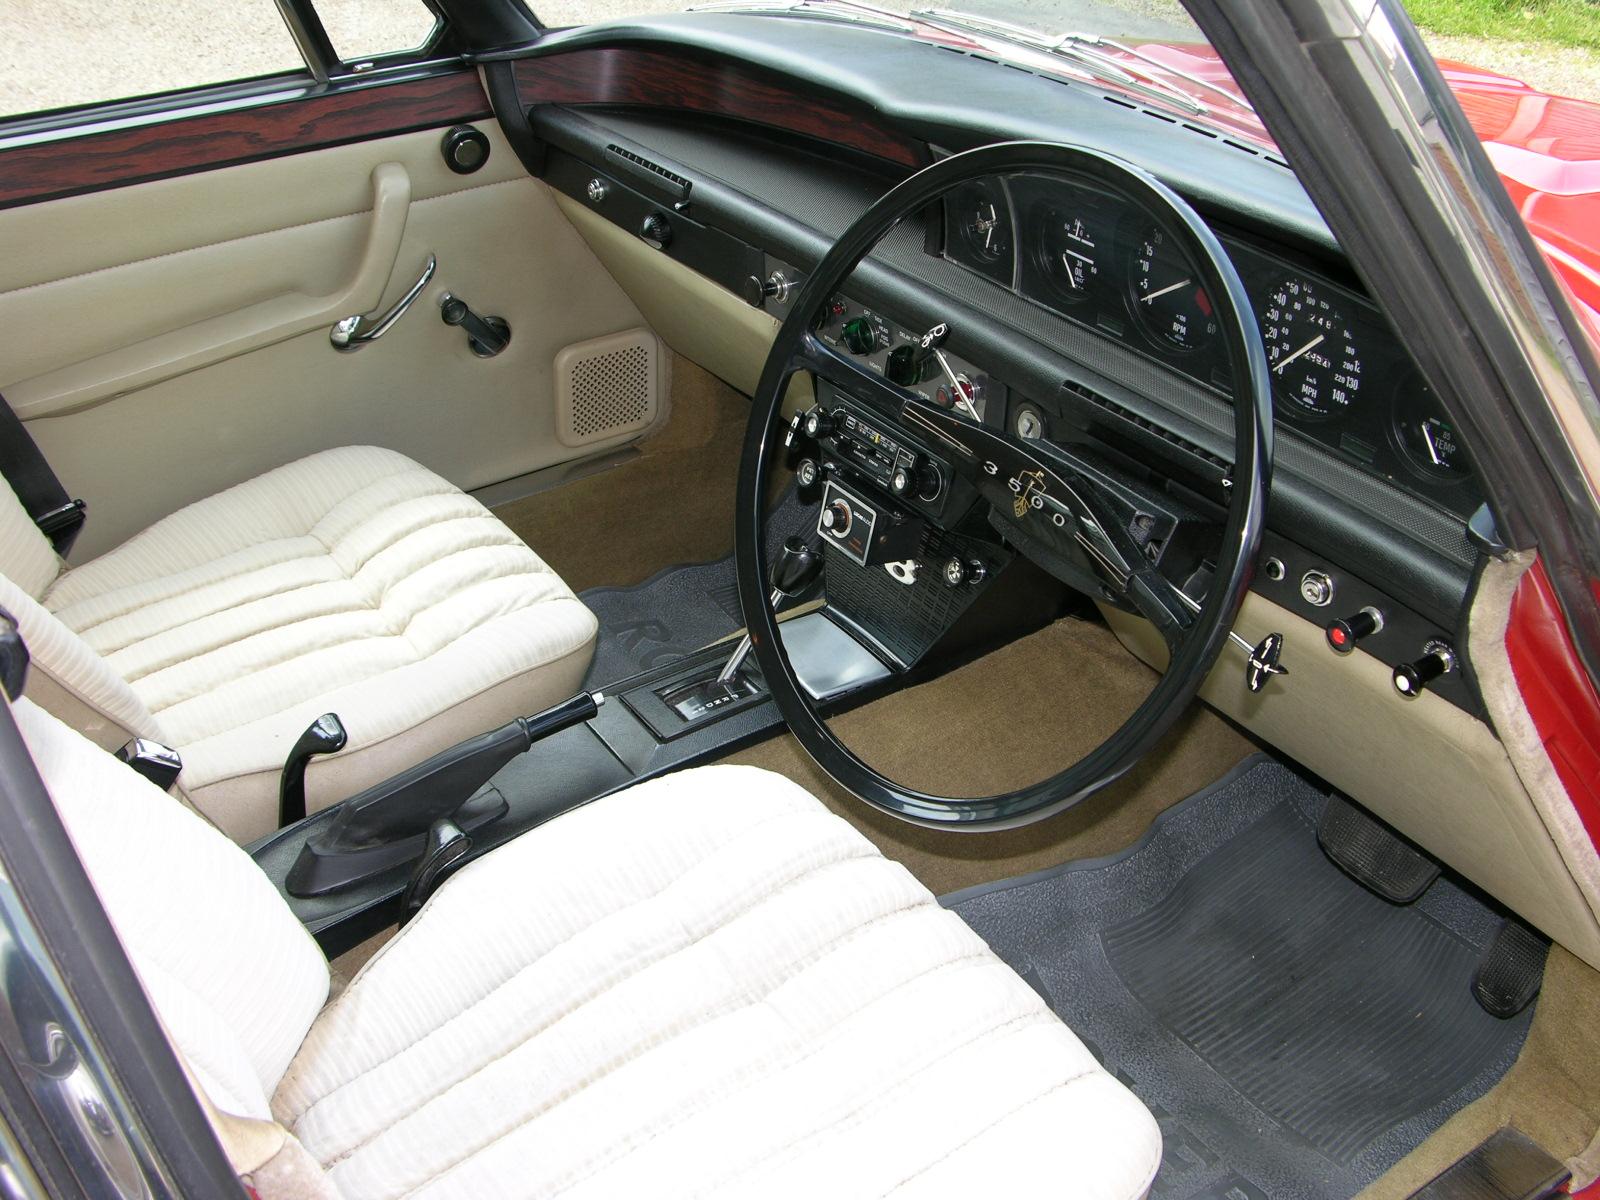 Rover, Rover P6, Rover V8, P6, Rover P6 interior